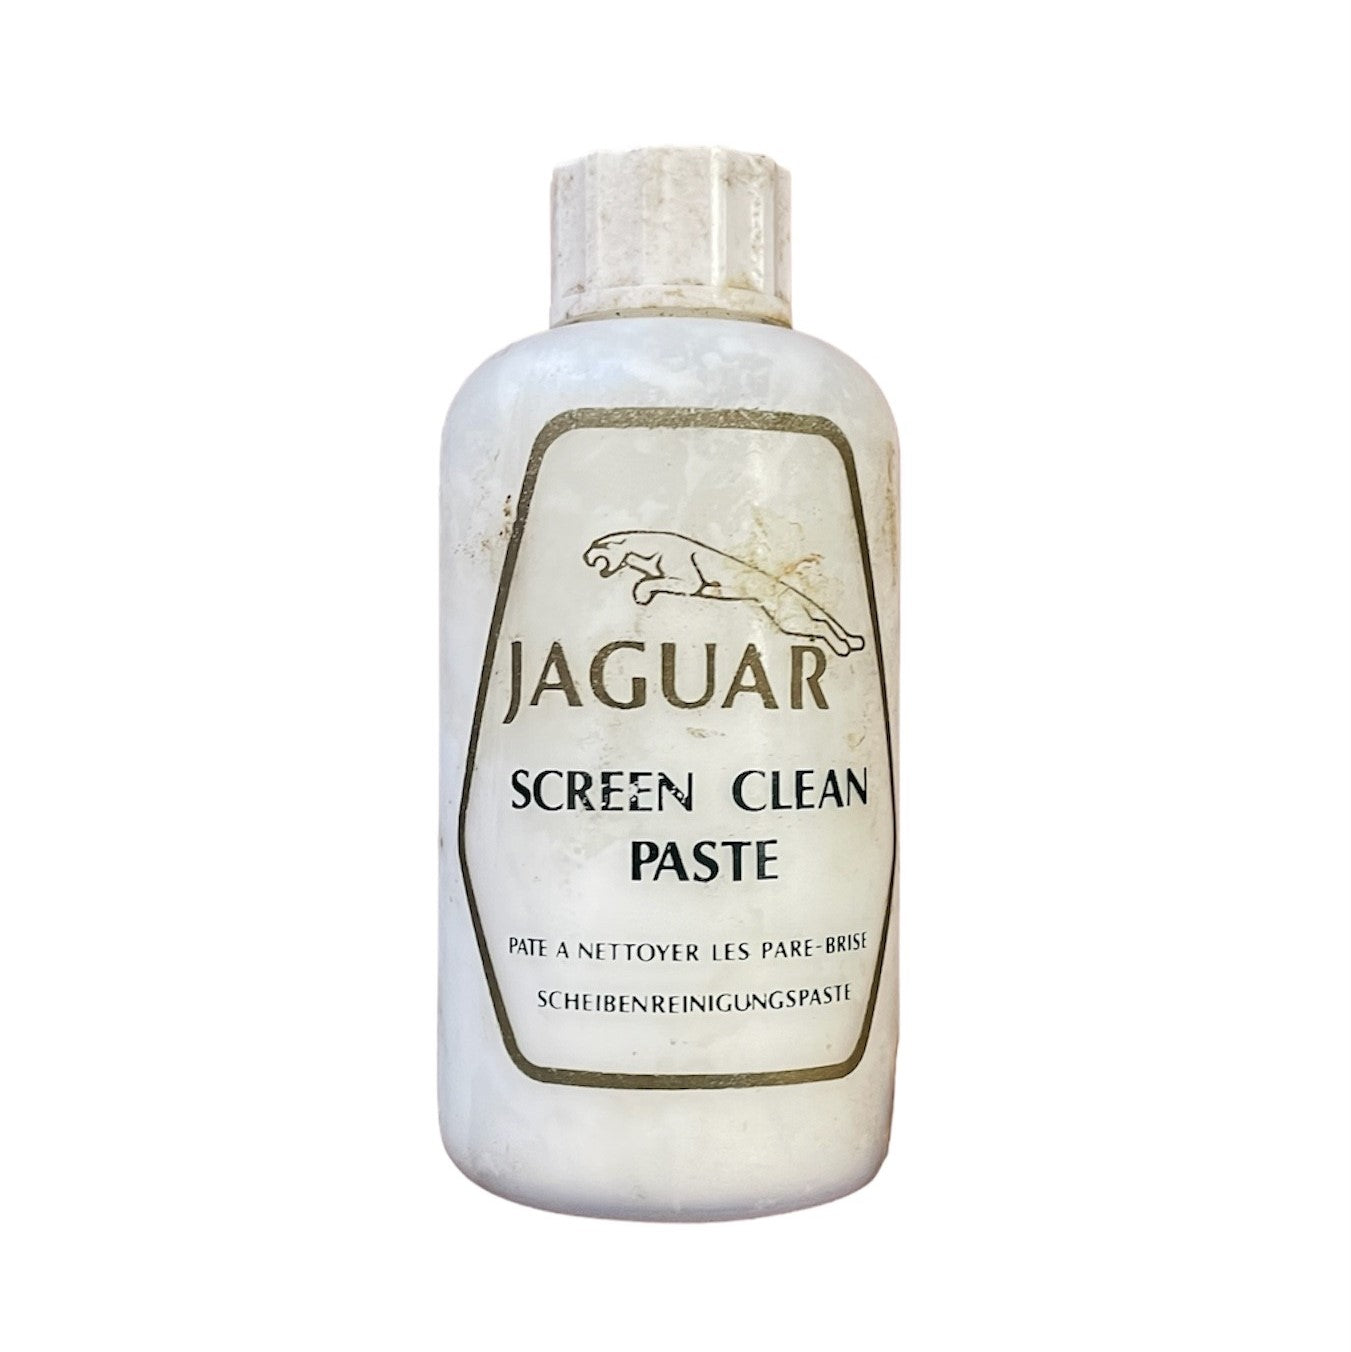 Jaguar Screen Clean Paste 125ml